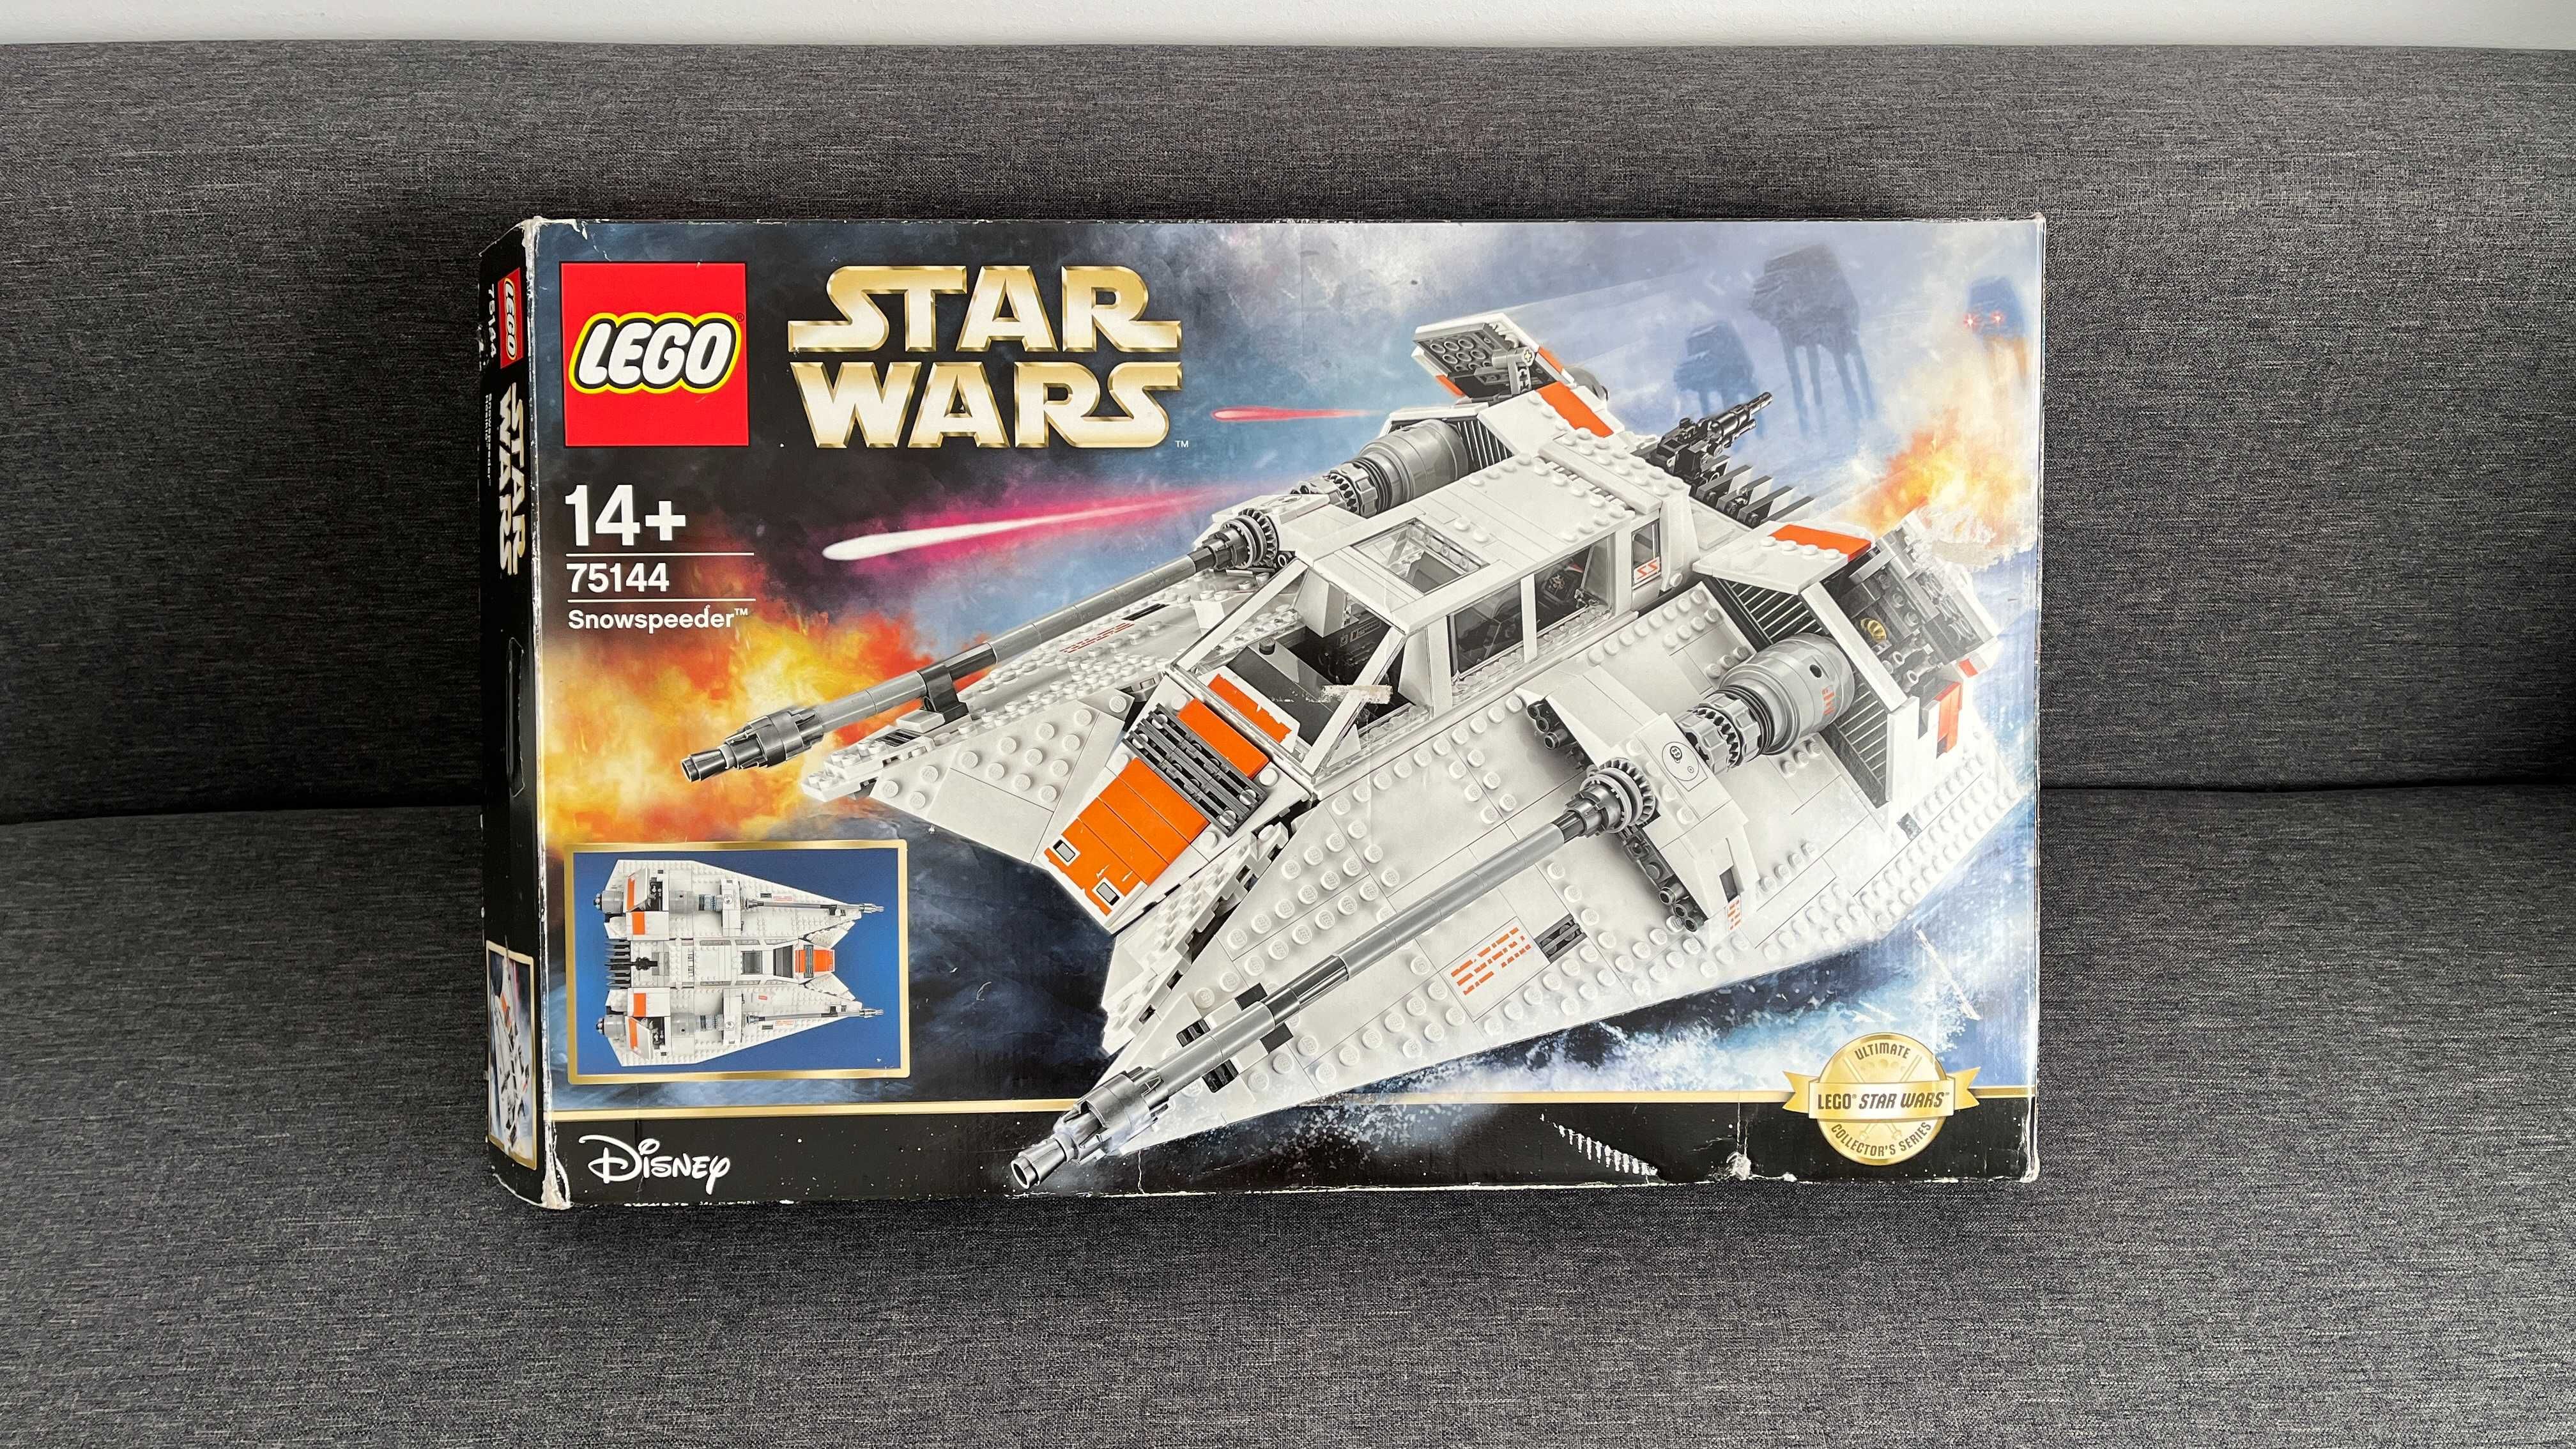 Lego Star Wars - 75144 - Snowspeeder - UCS 2nd Edition - an 2017